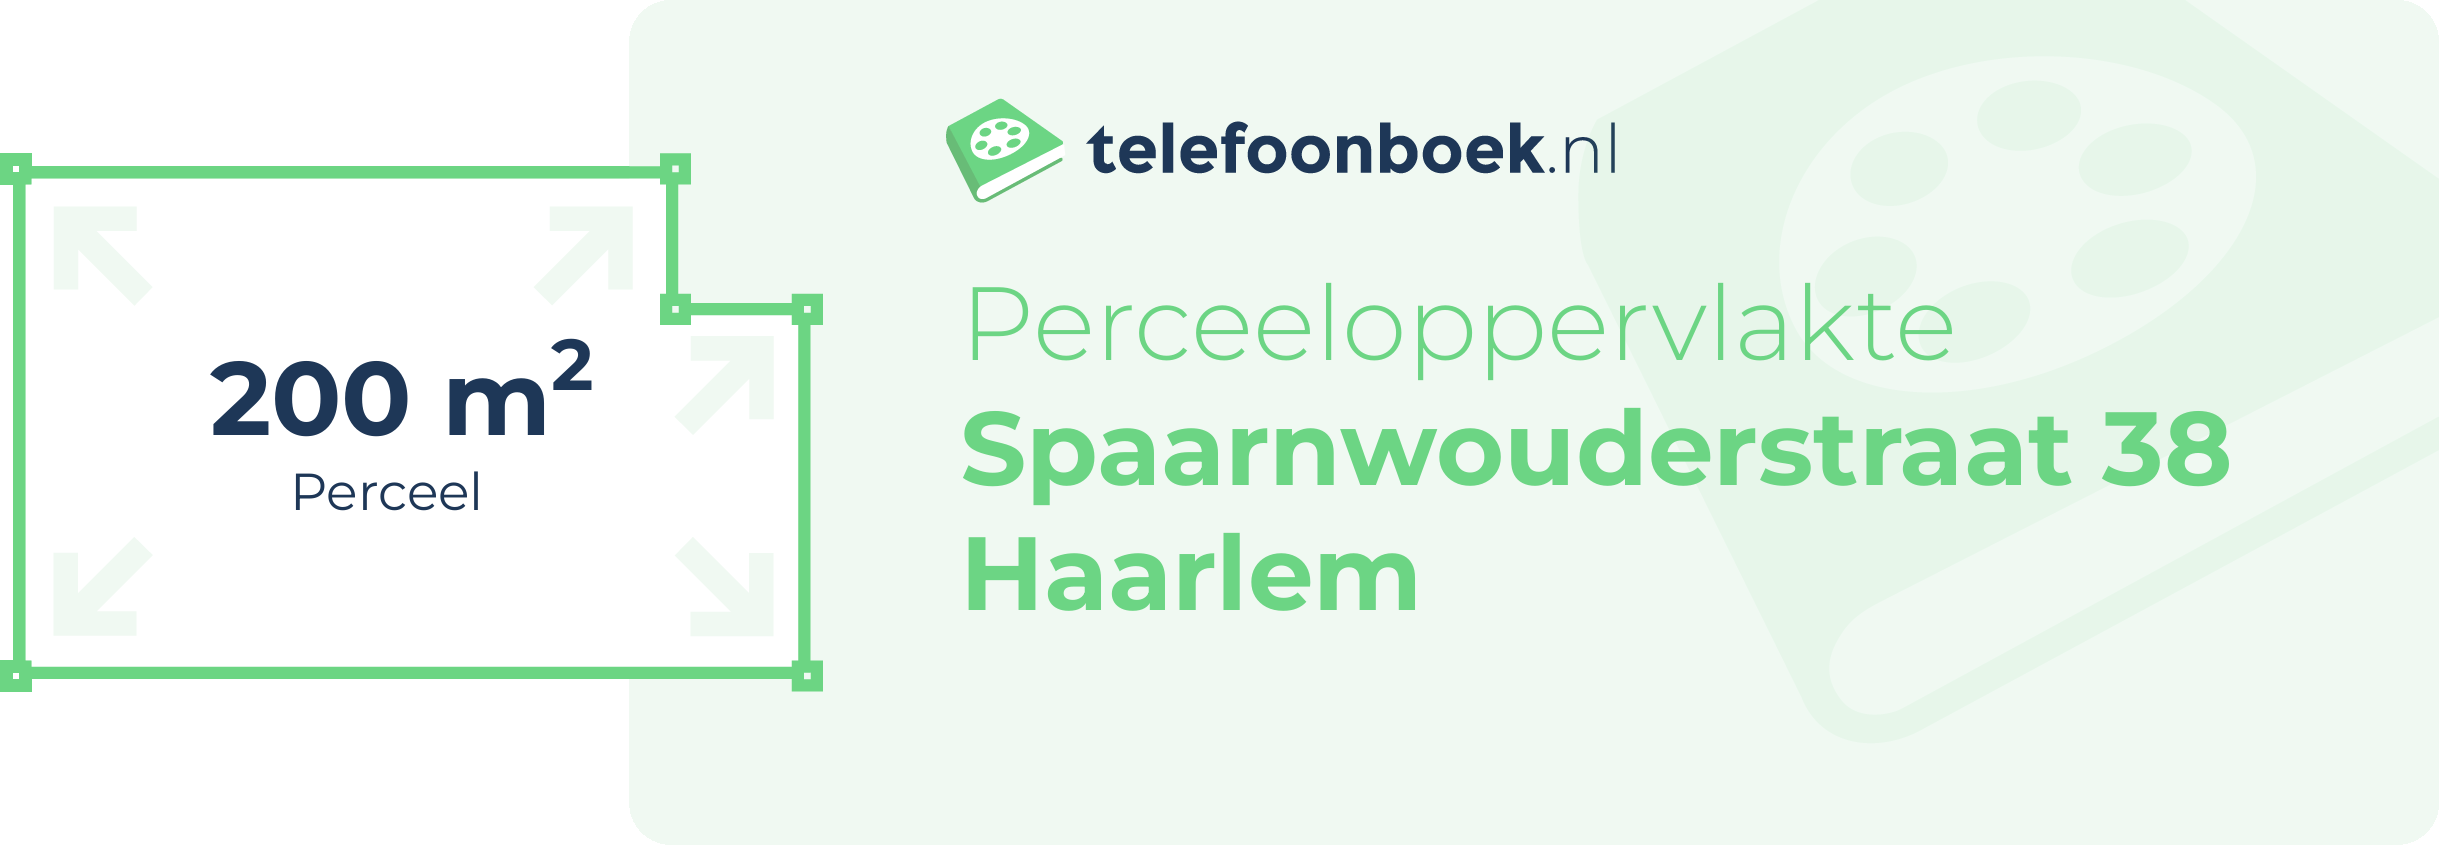 Perceeloppervlakte Spaarnwouderstraat 38 Haarlem